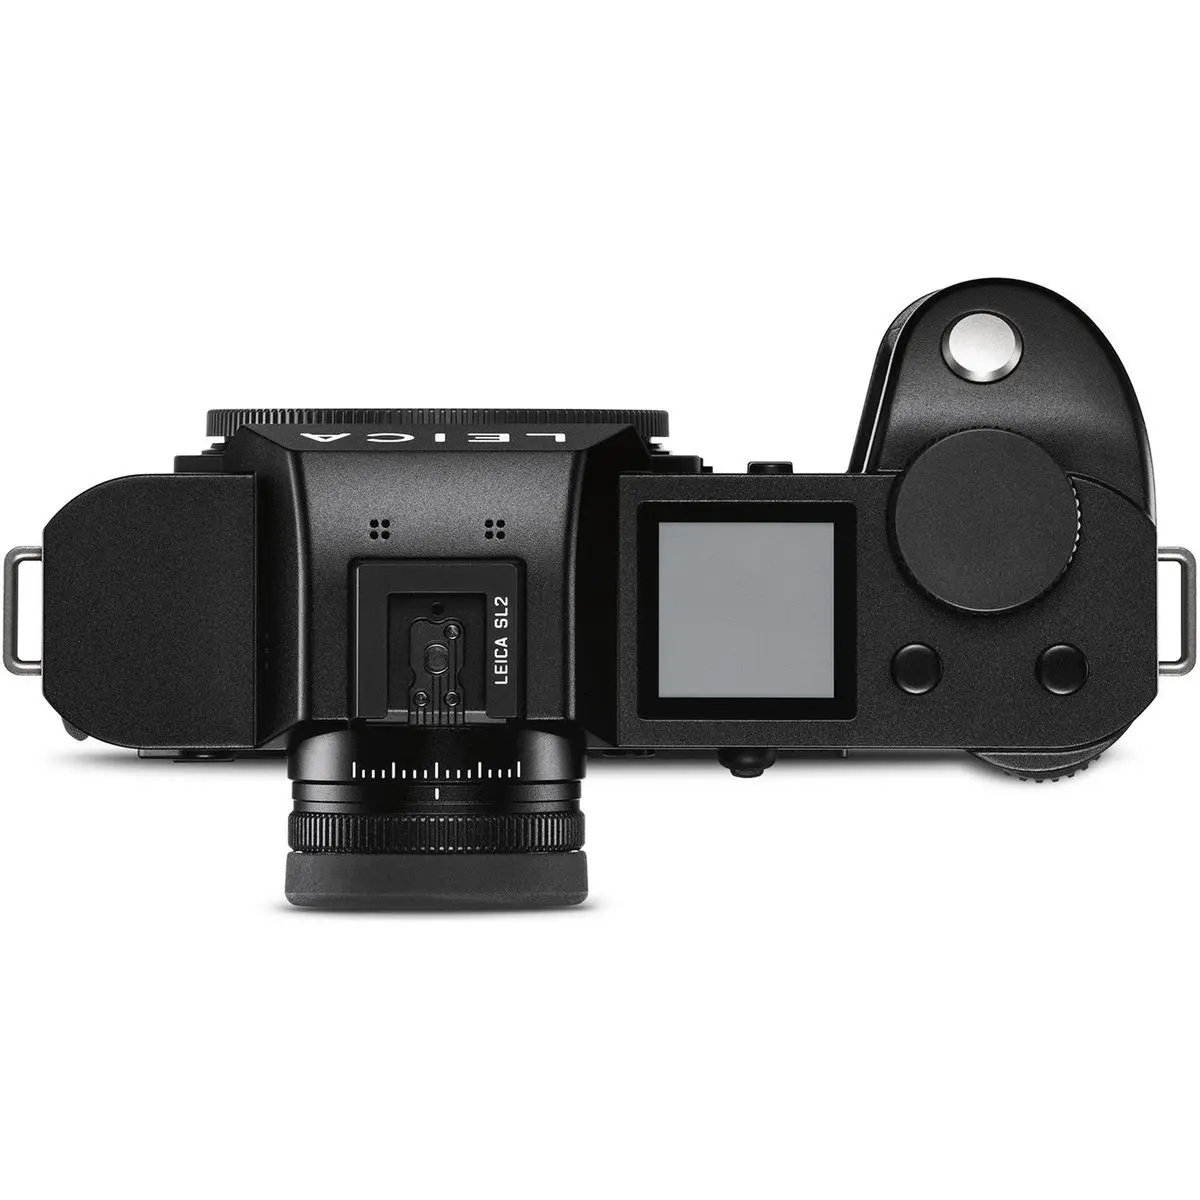 2. Leica SL2